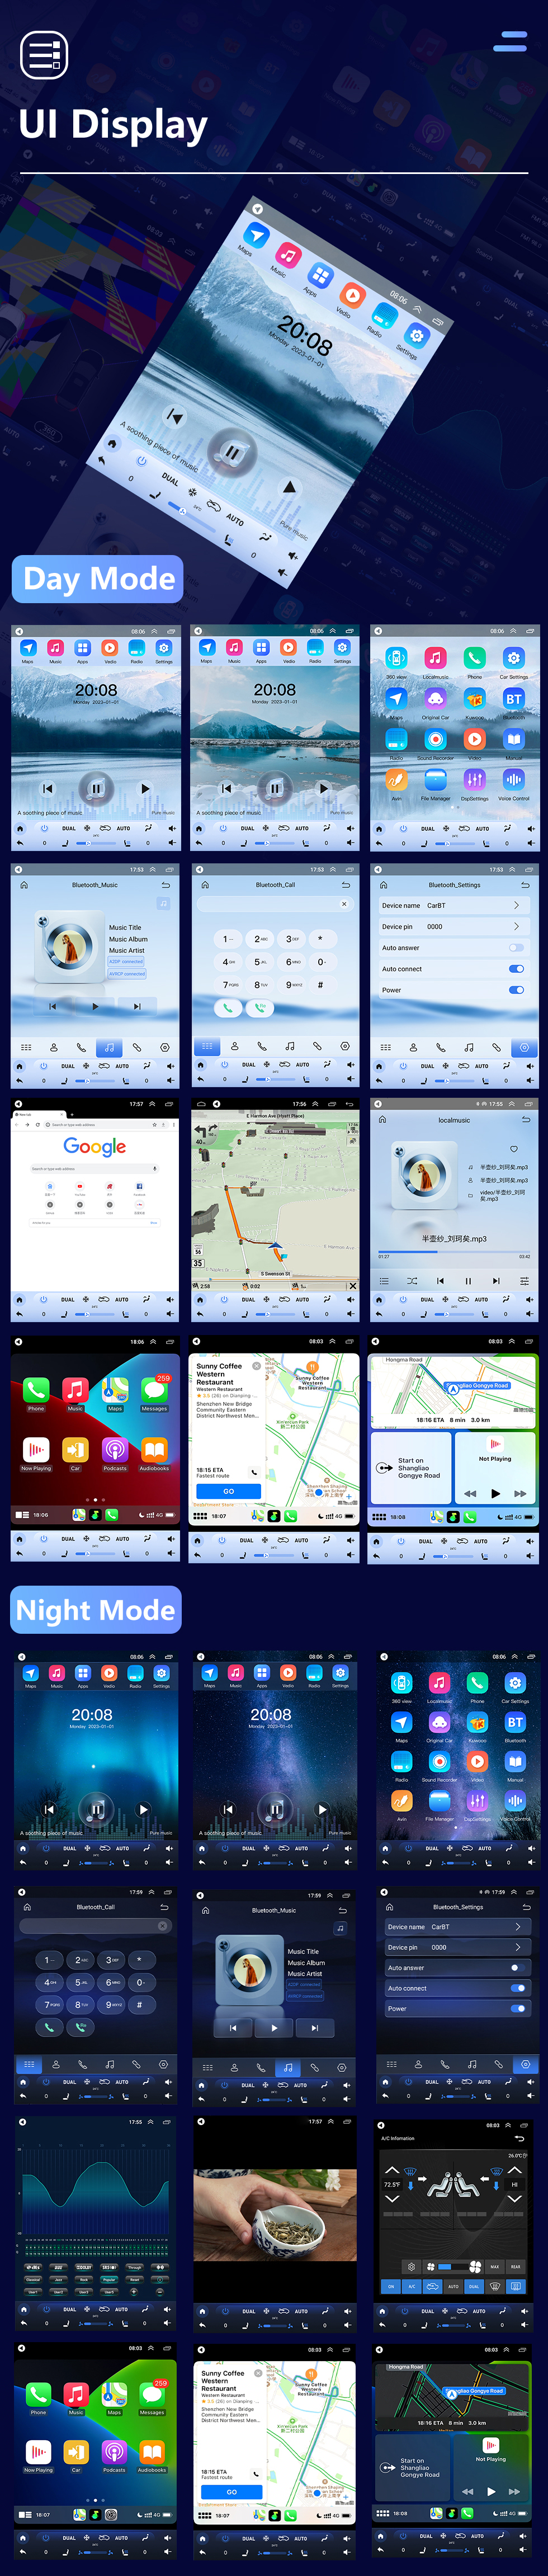 Seicane 9,7 polegadas 2013-2018 mitsubishi aSX android 10.0 sistema de navegação gps de rádio com 4g wifi tela de toque tpms dvr obd ii câmera traseira aux controle de volante usb sd bluetooth hd 1080 p vídeo